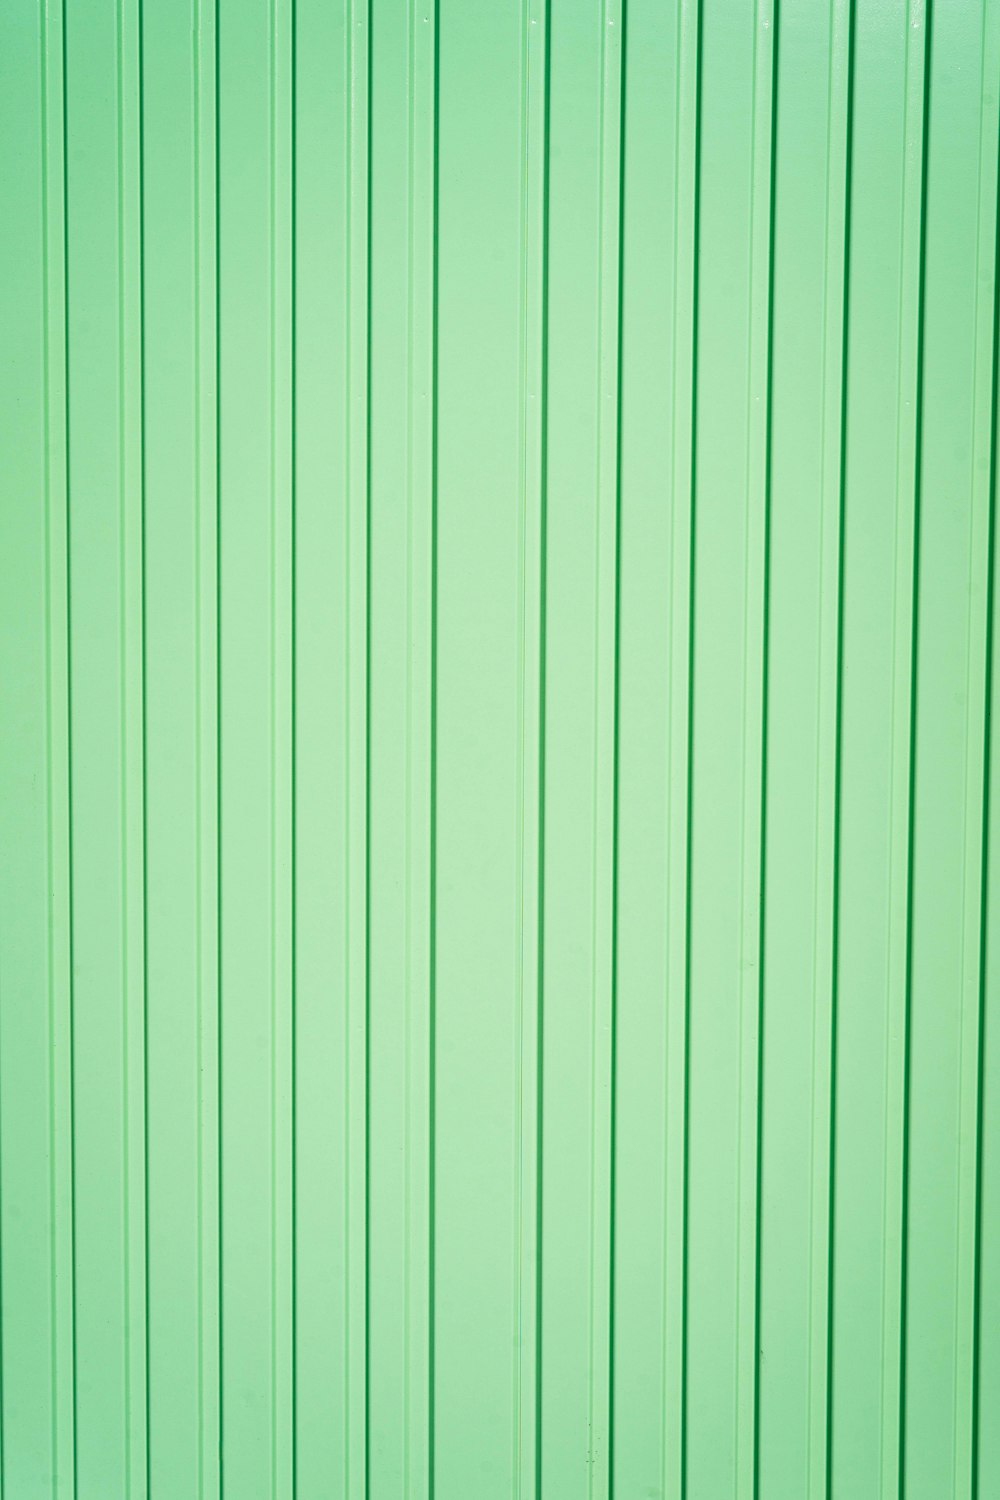 緑と白の縞模様のテキスタイル